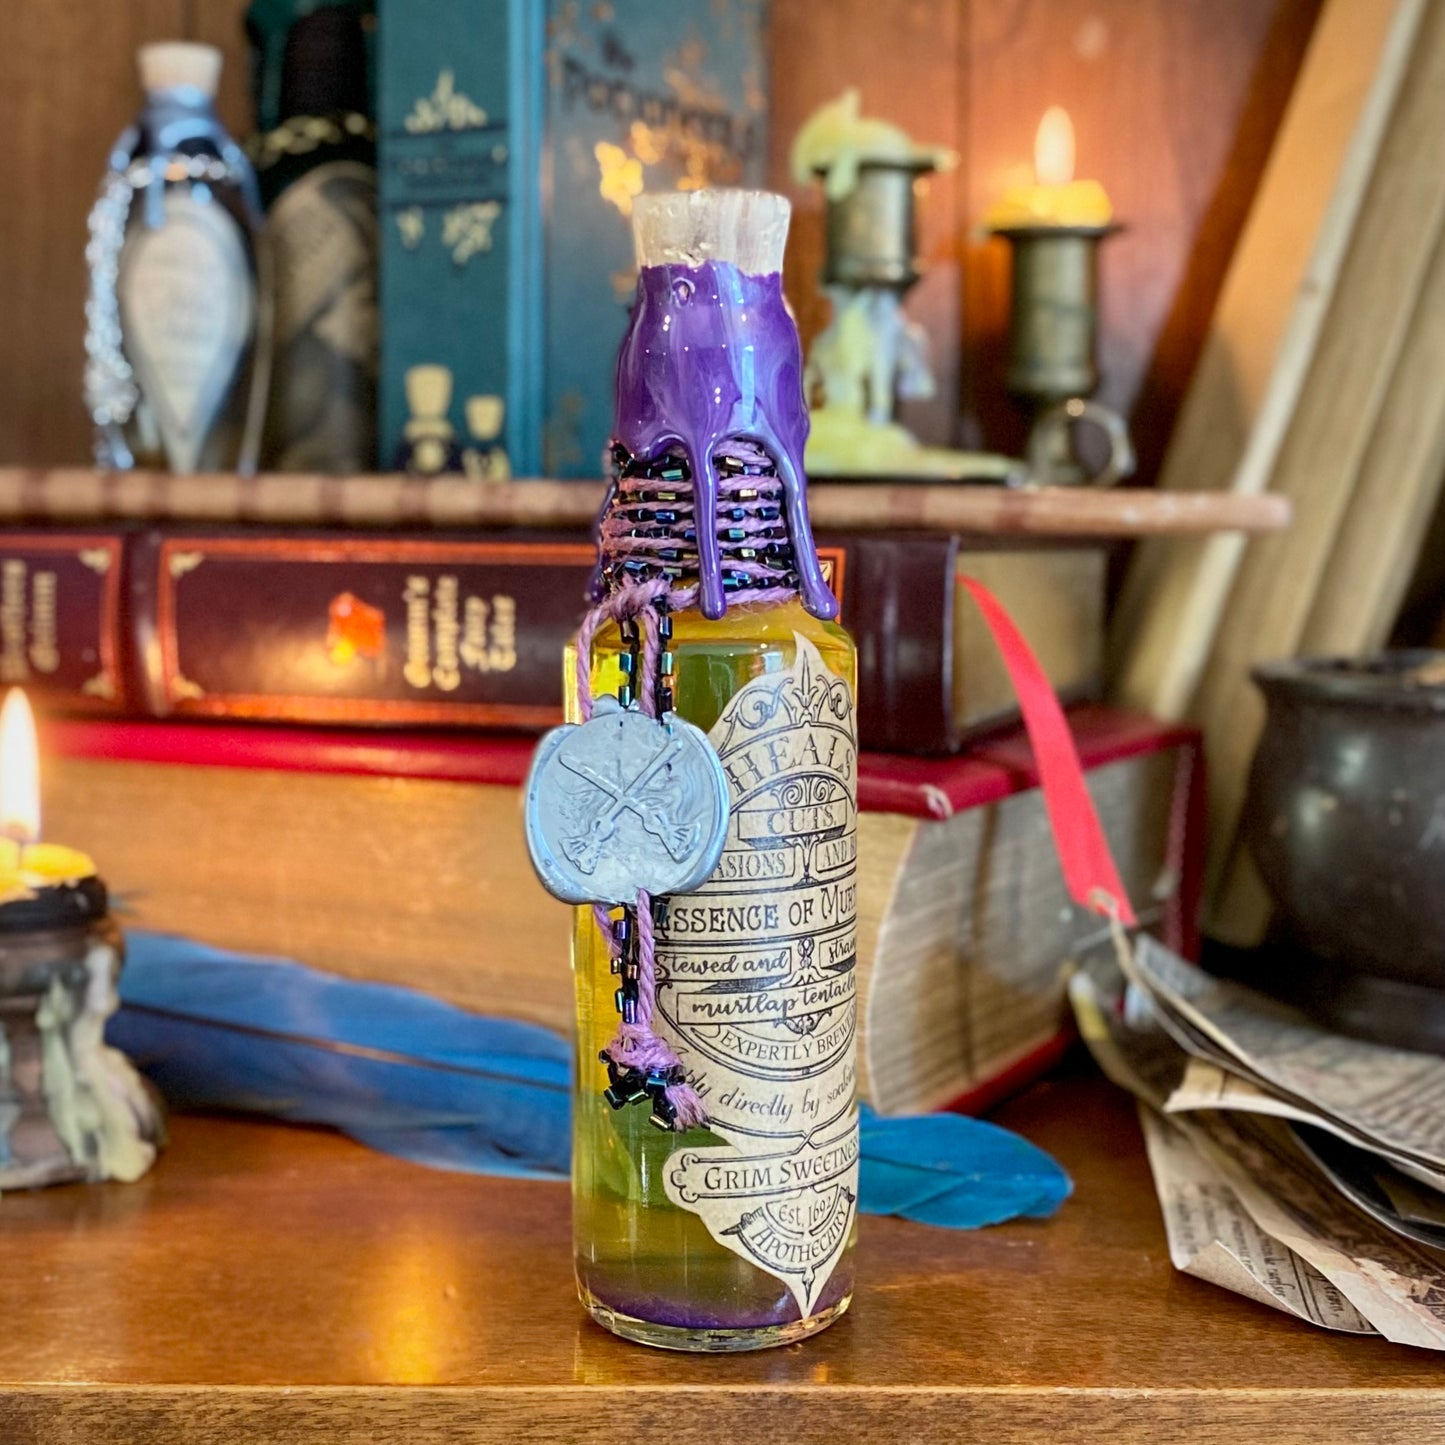 Essence of Murtlap, A Glowy, Color Change Potion Bottle Prop